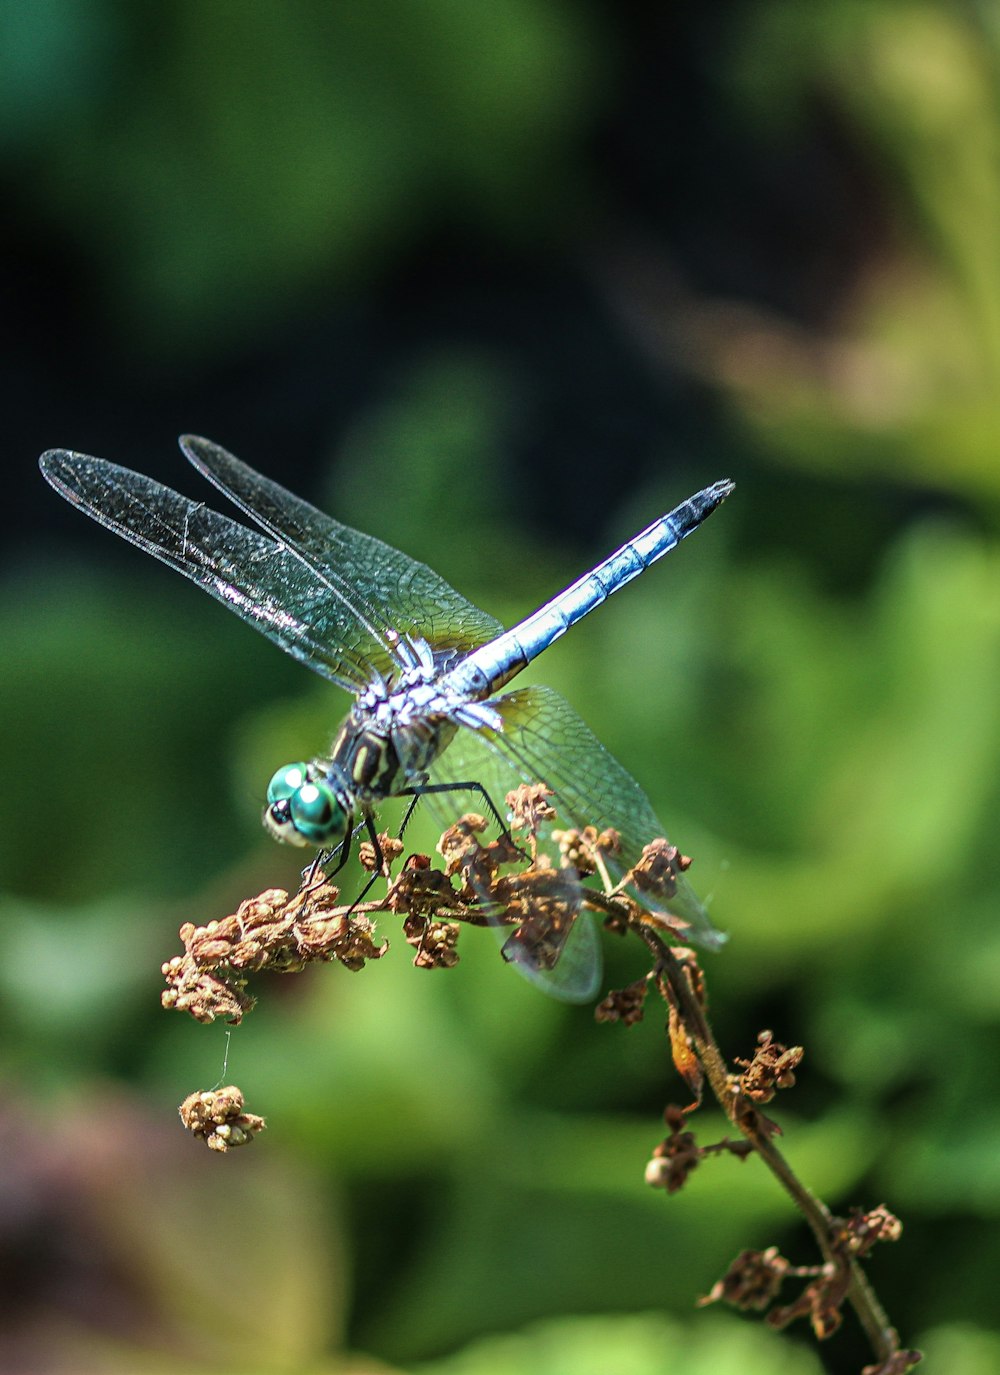 libellule bleue et blanche perchée sur la tige de la plante brune en gros plan pendant la journée